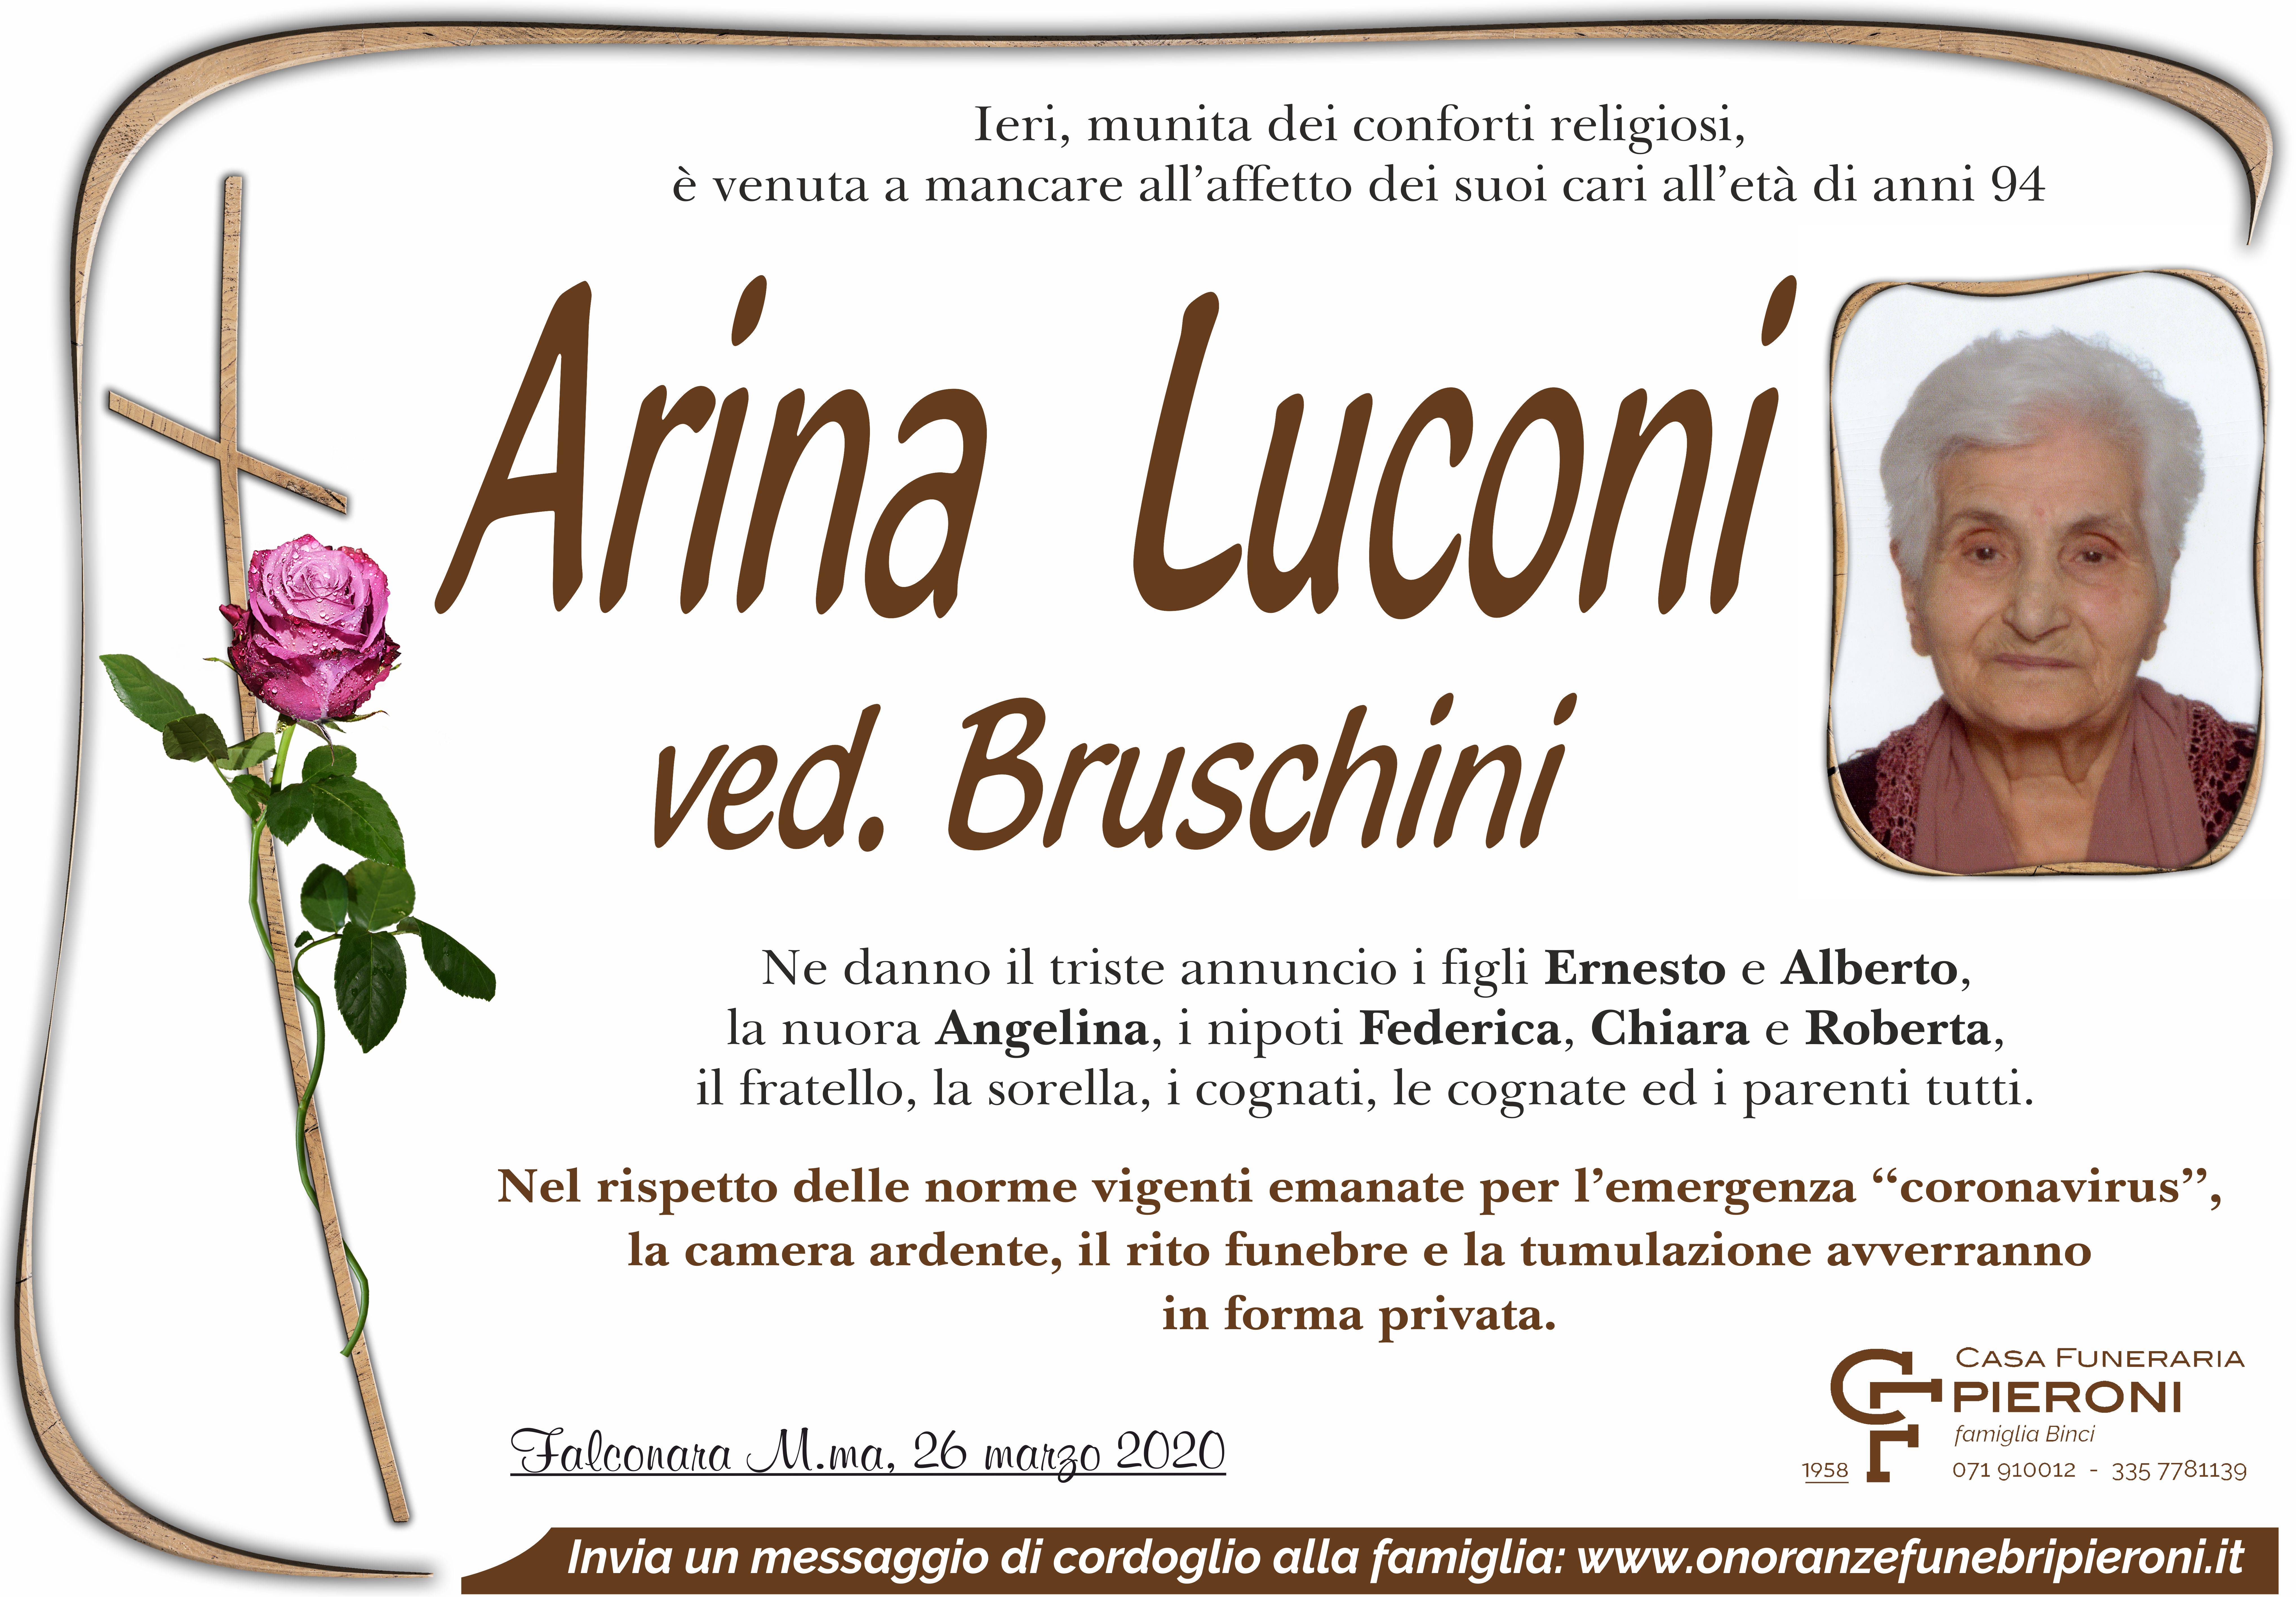 Arina Luconi